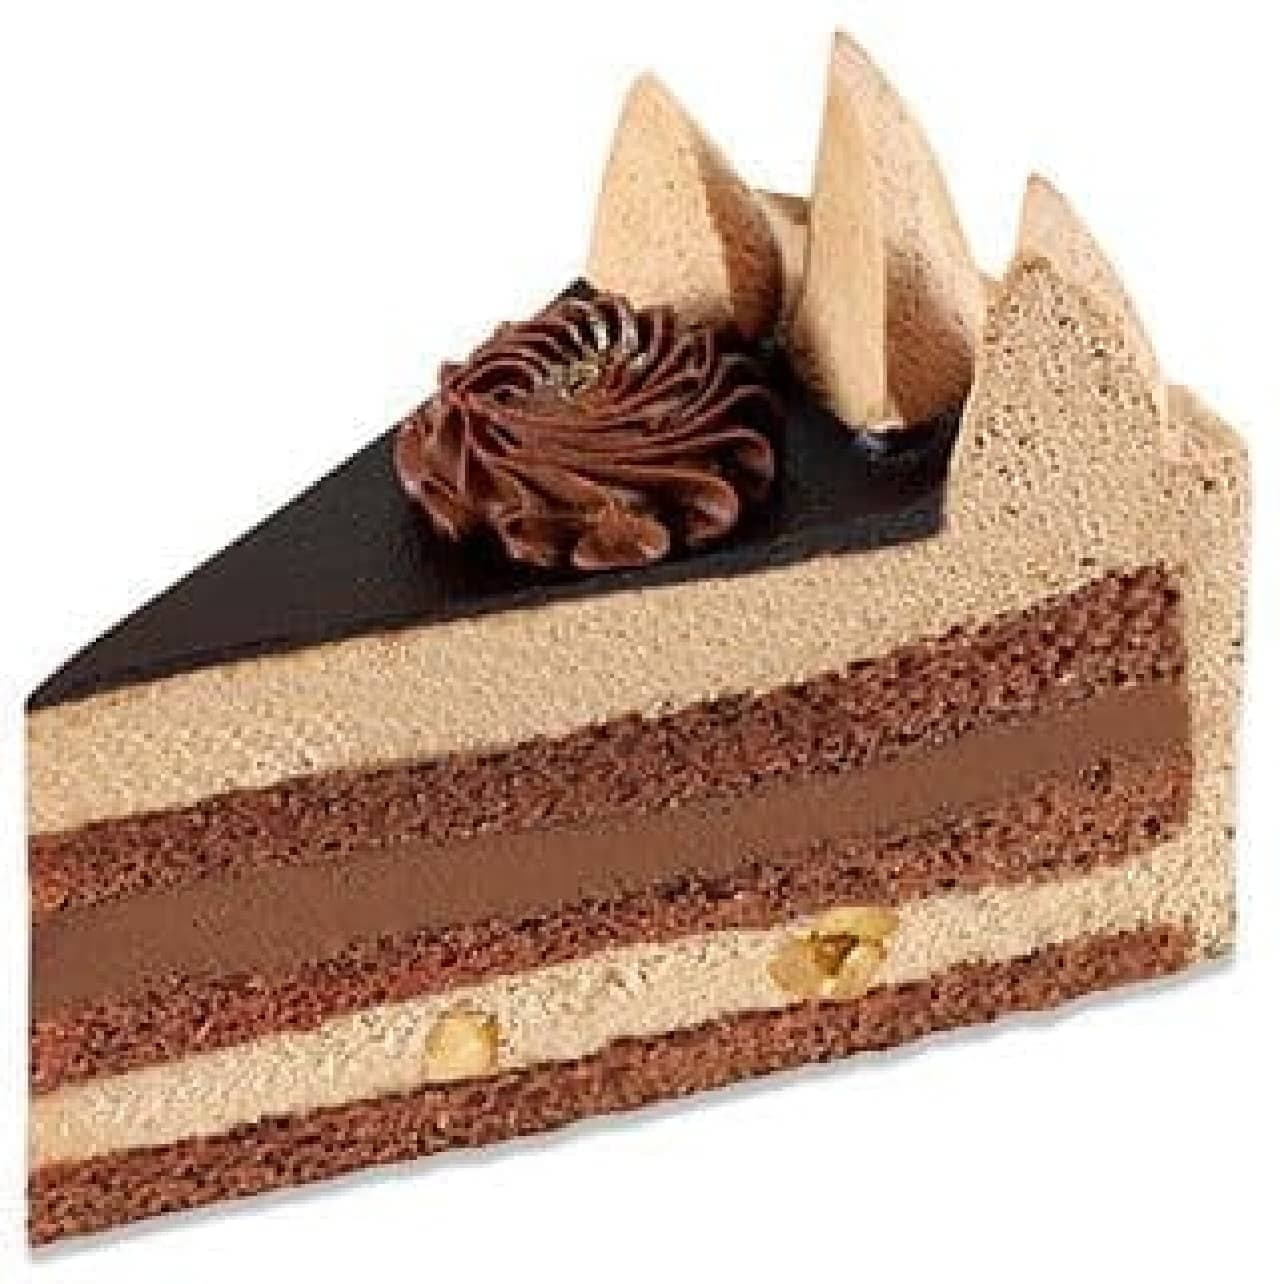 Fujiya "Premium Chocolate Fresh Cake